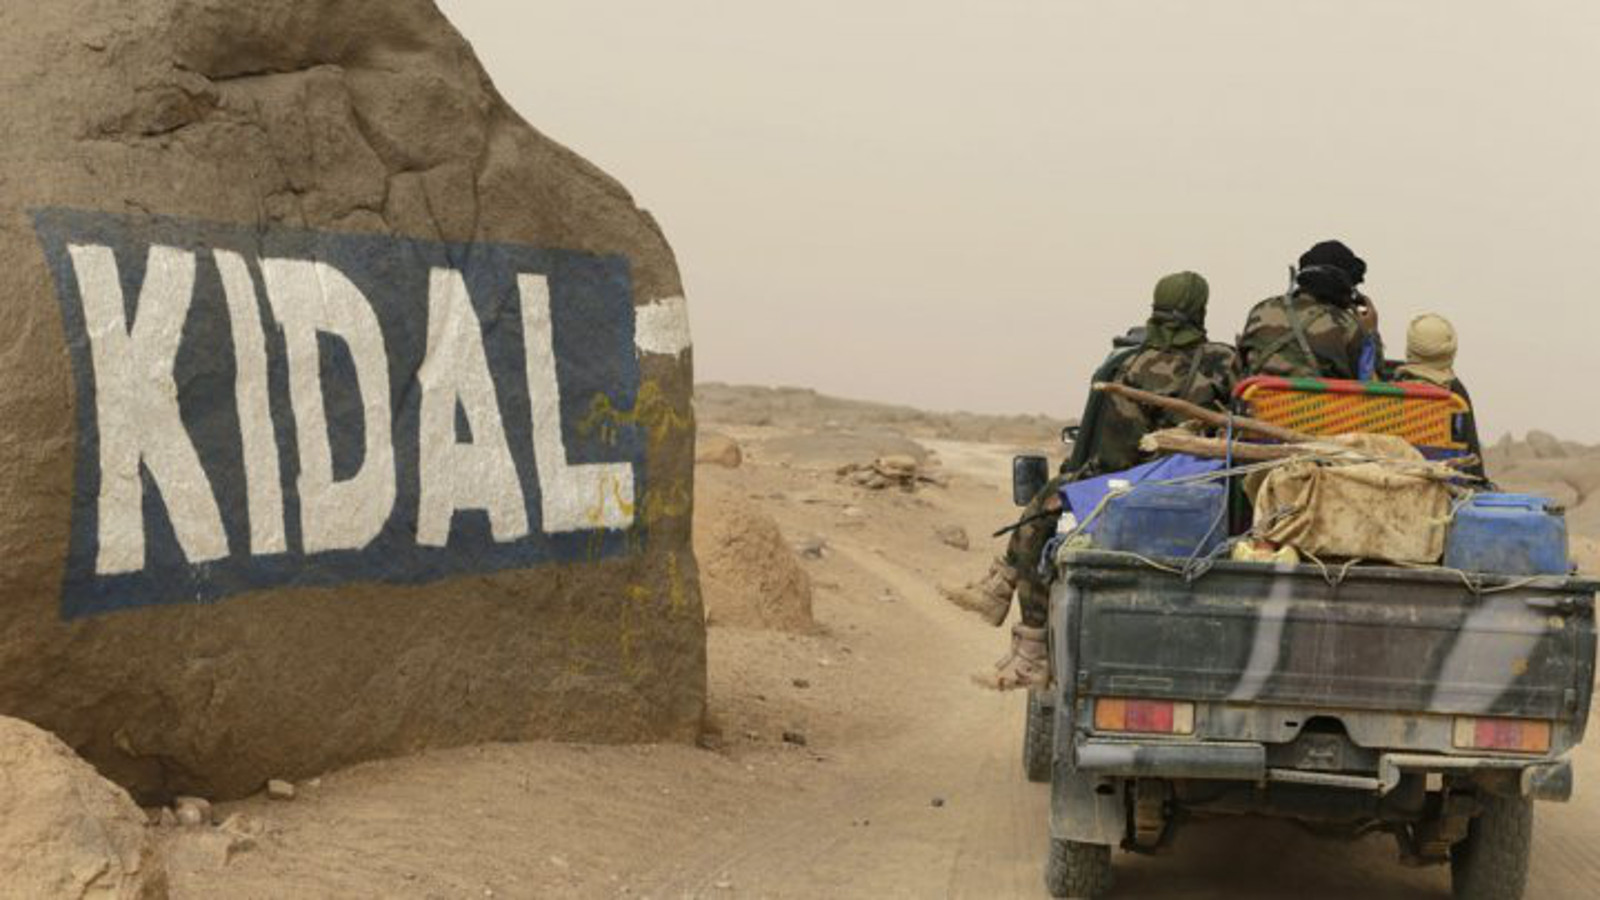 Kidal : « Discussions en cours » sur le retour de l’armée